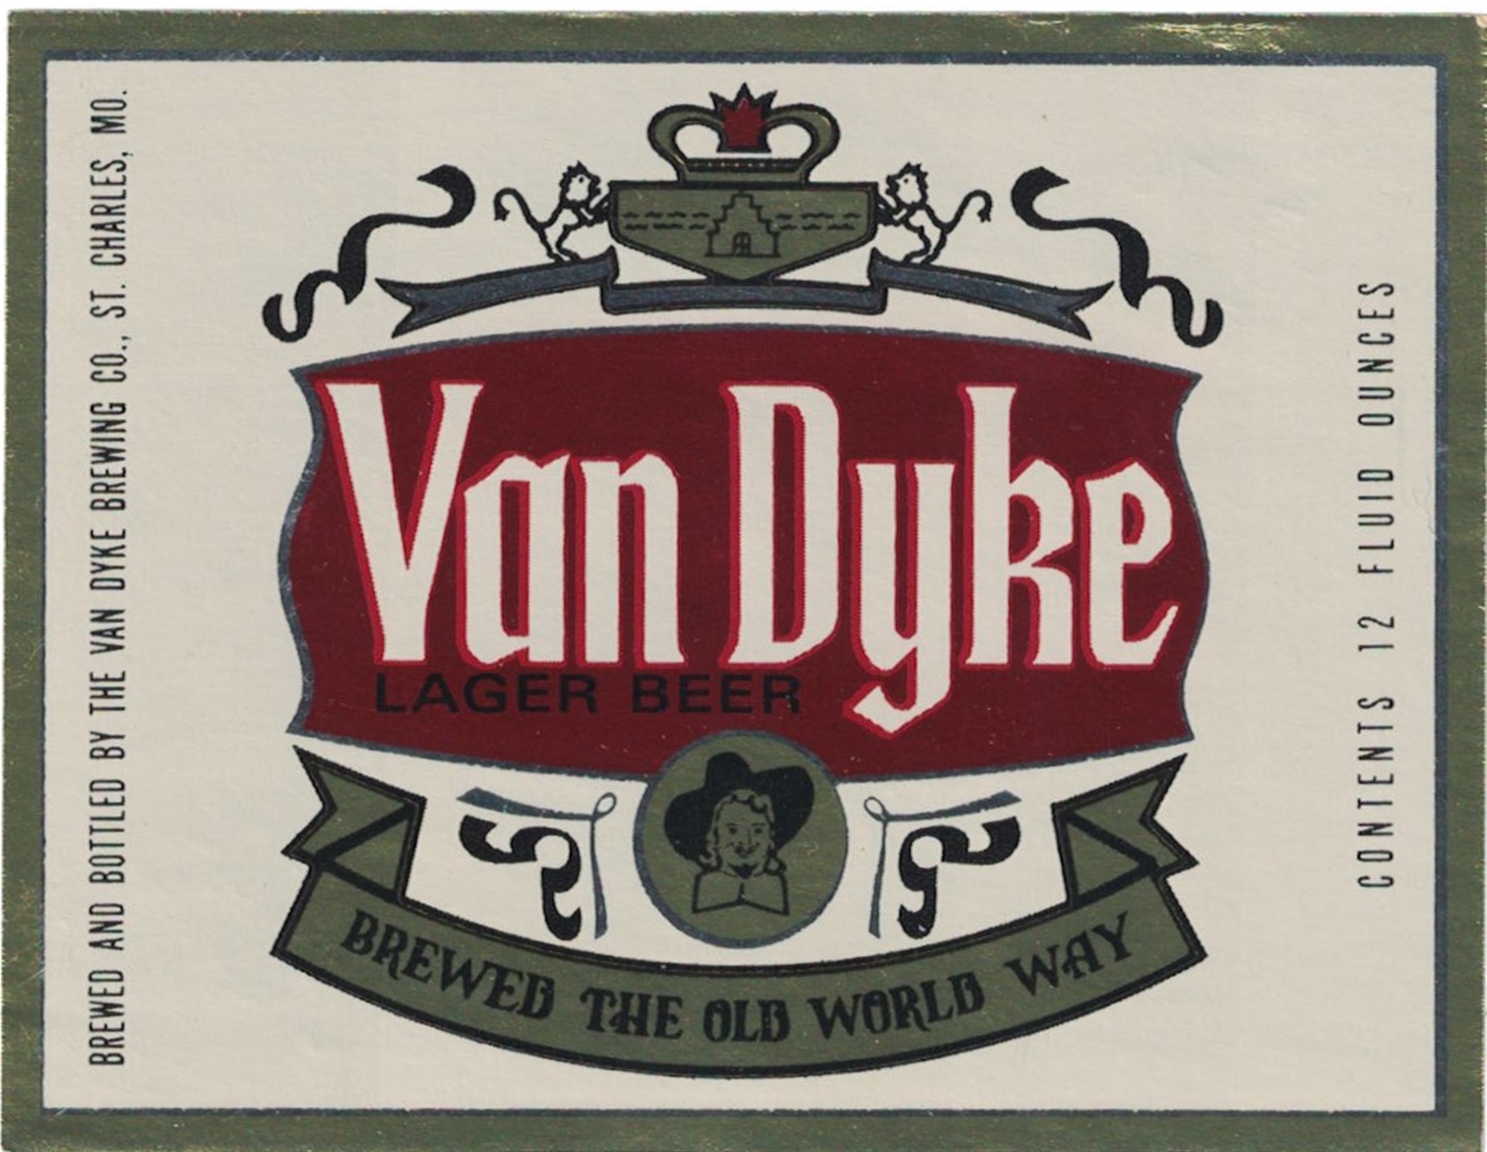 Van Dyke Lager Beer Label